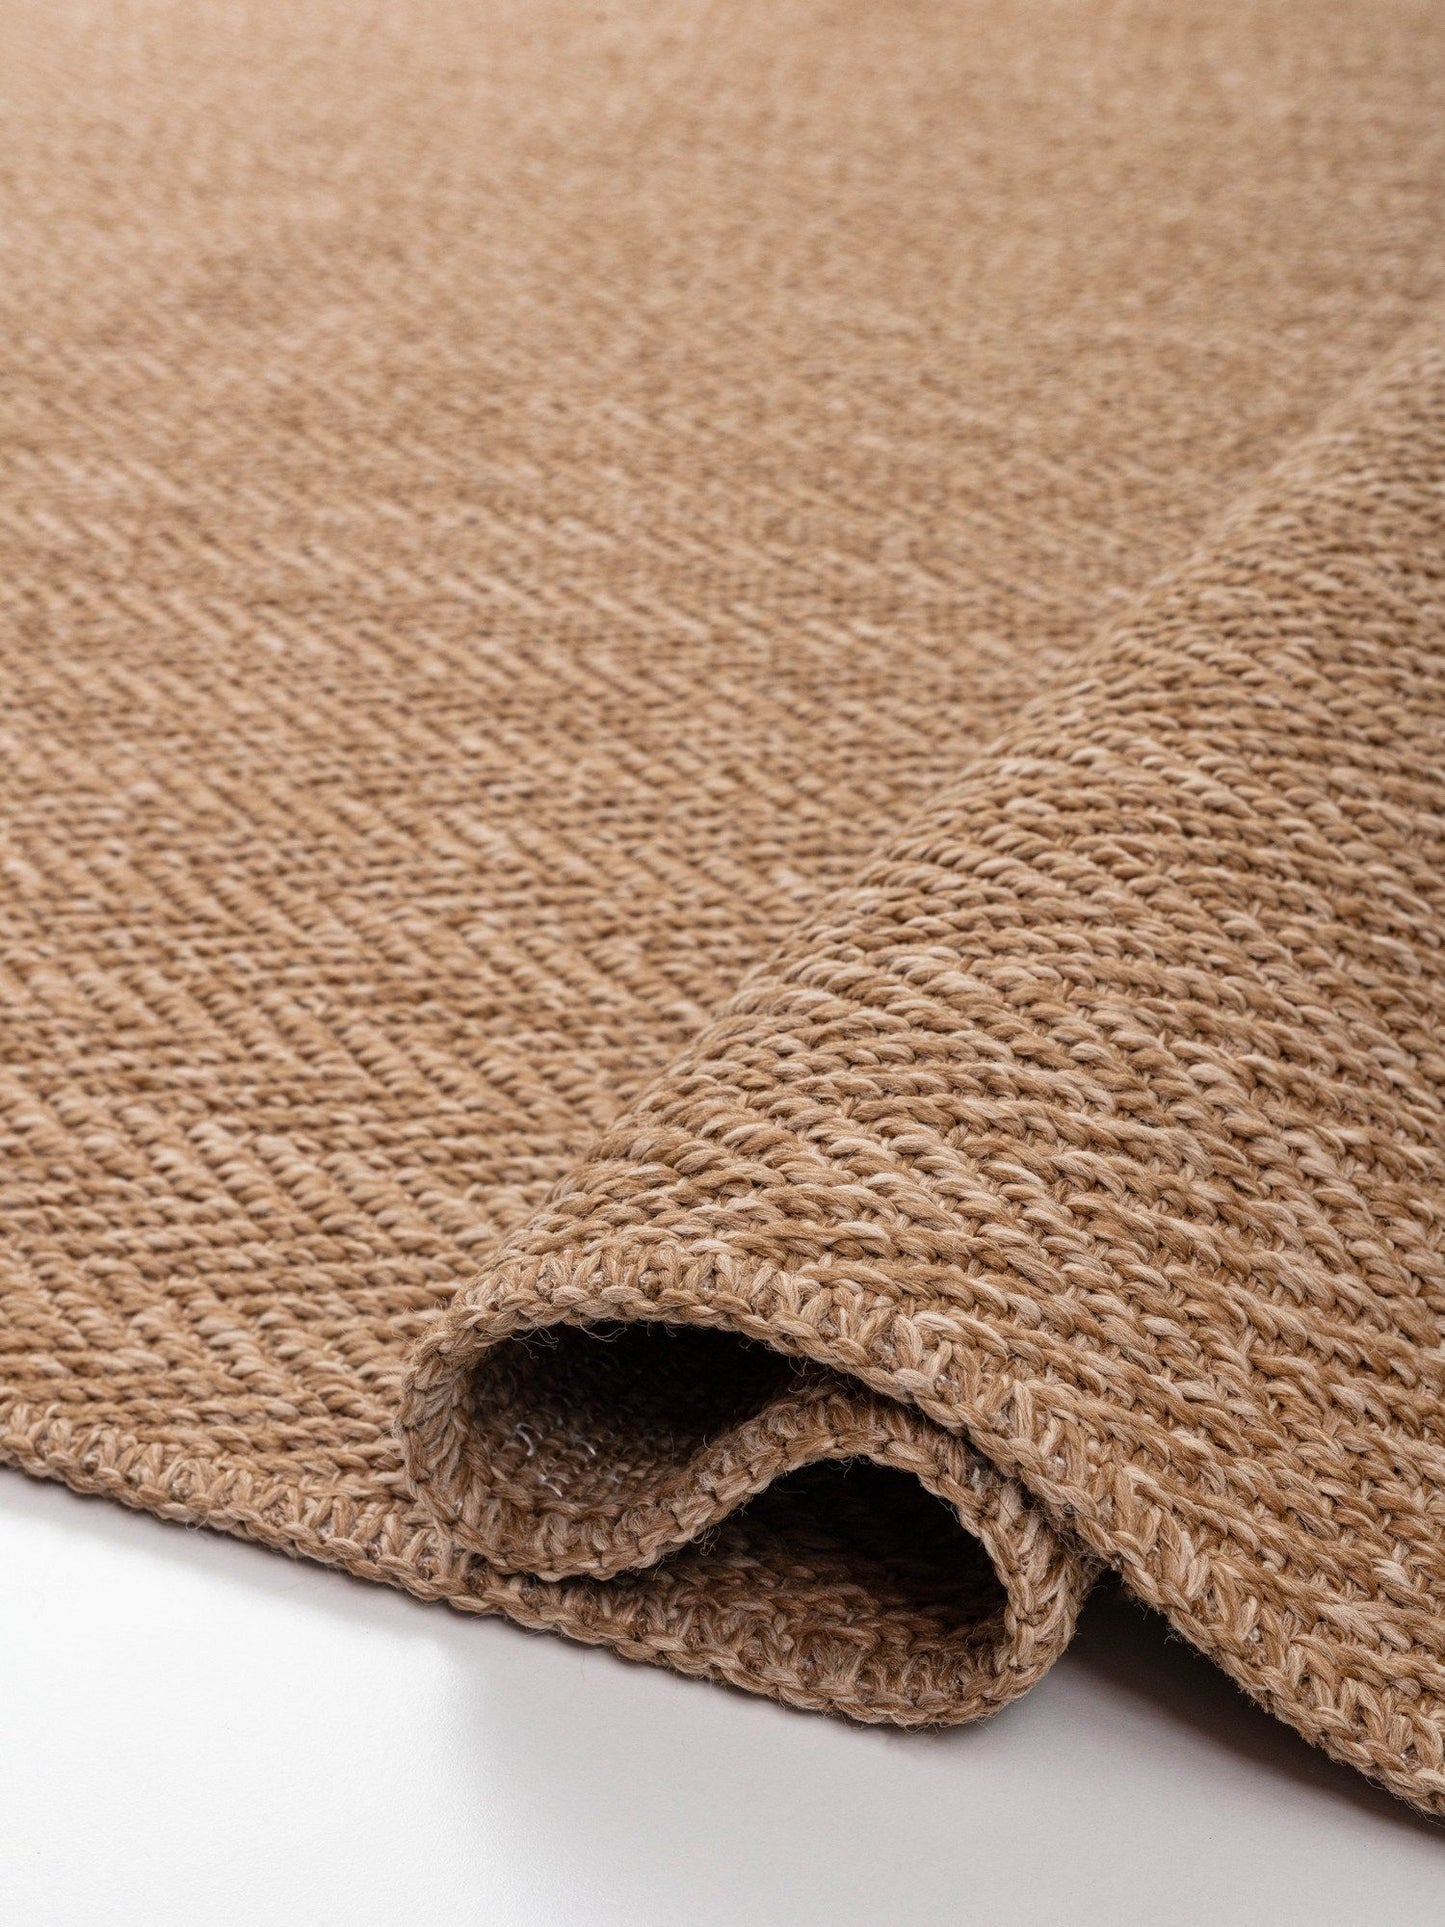 0503 Jut - Brown - Carpet (100 x 200)